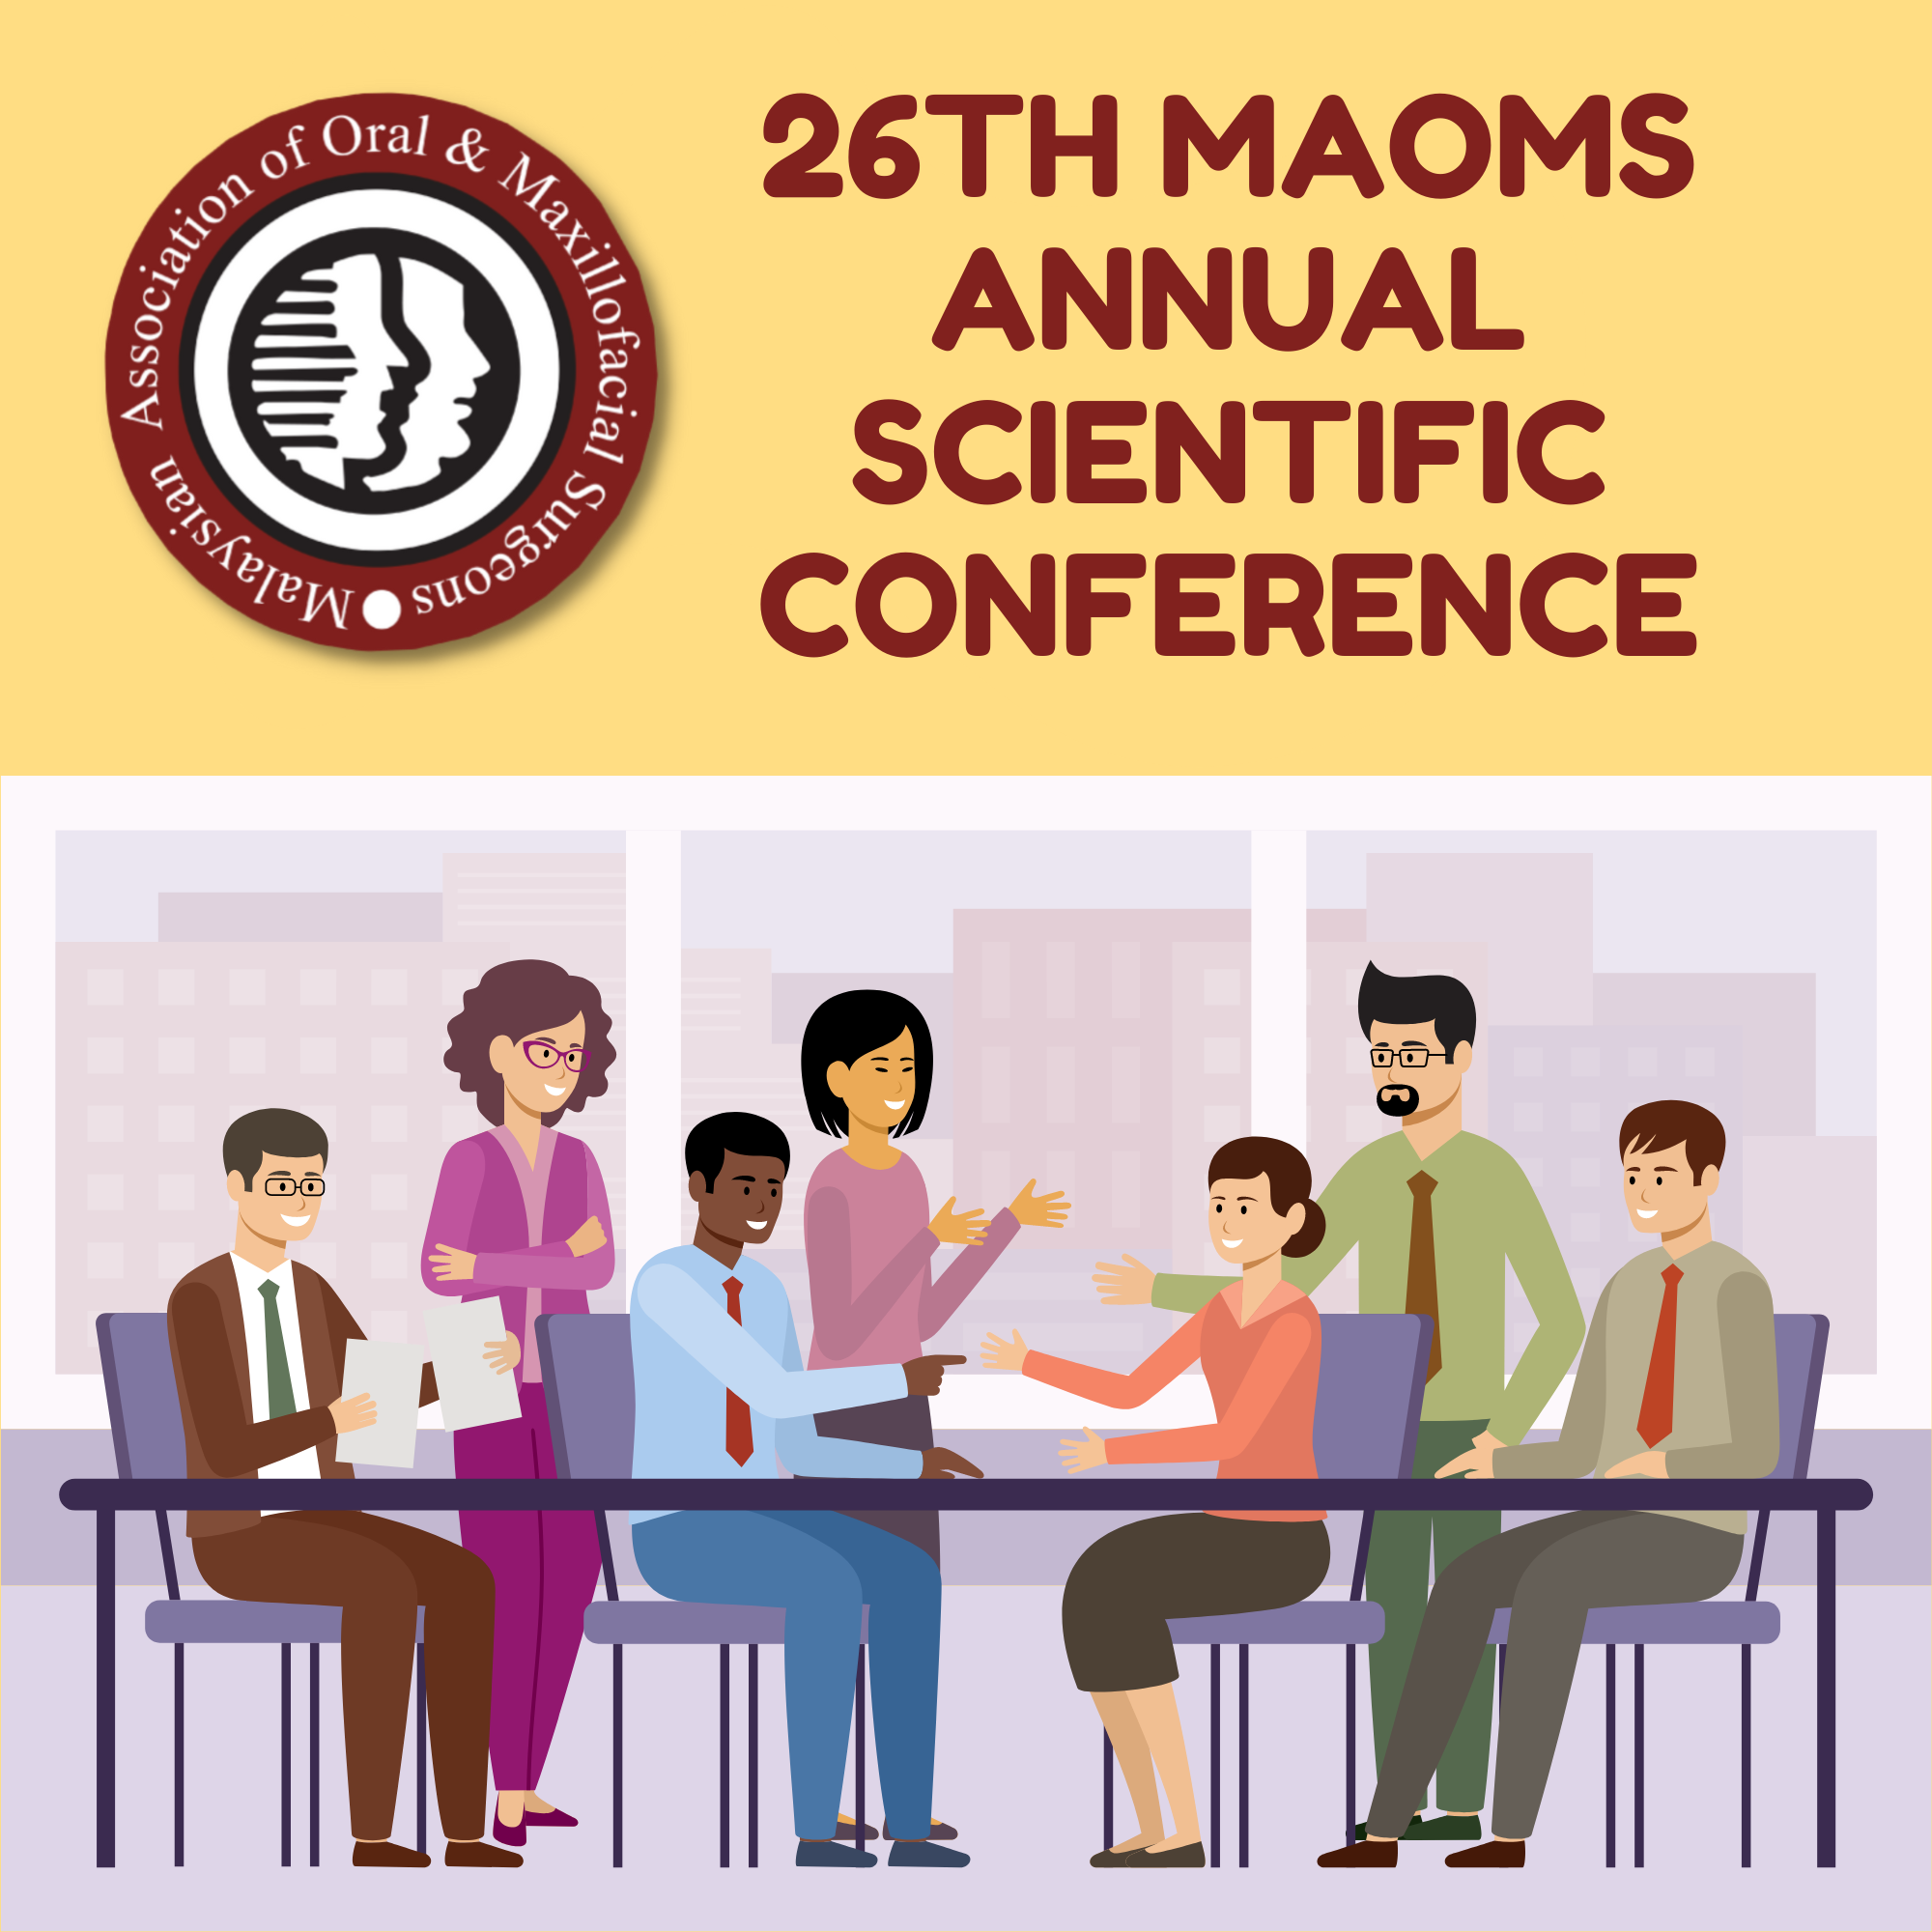 26th MAOMS Annual Scientific Conference